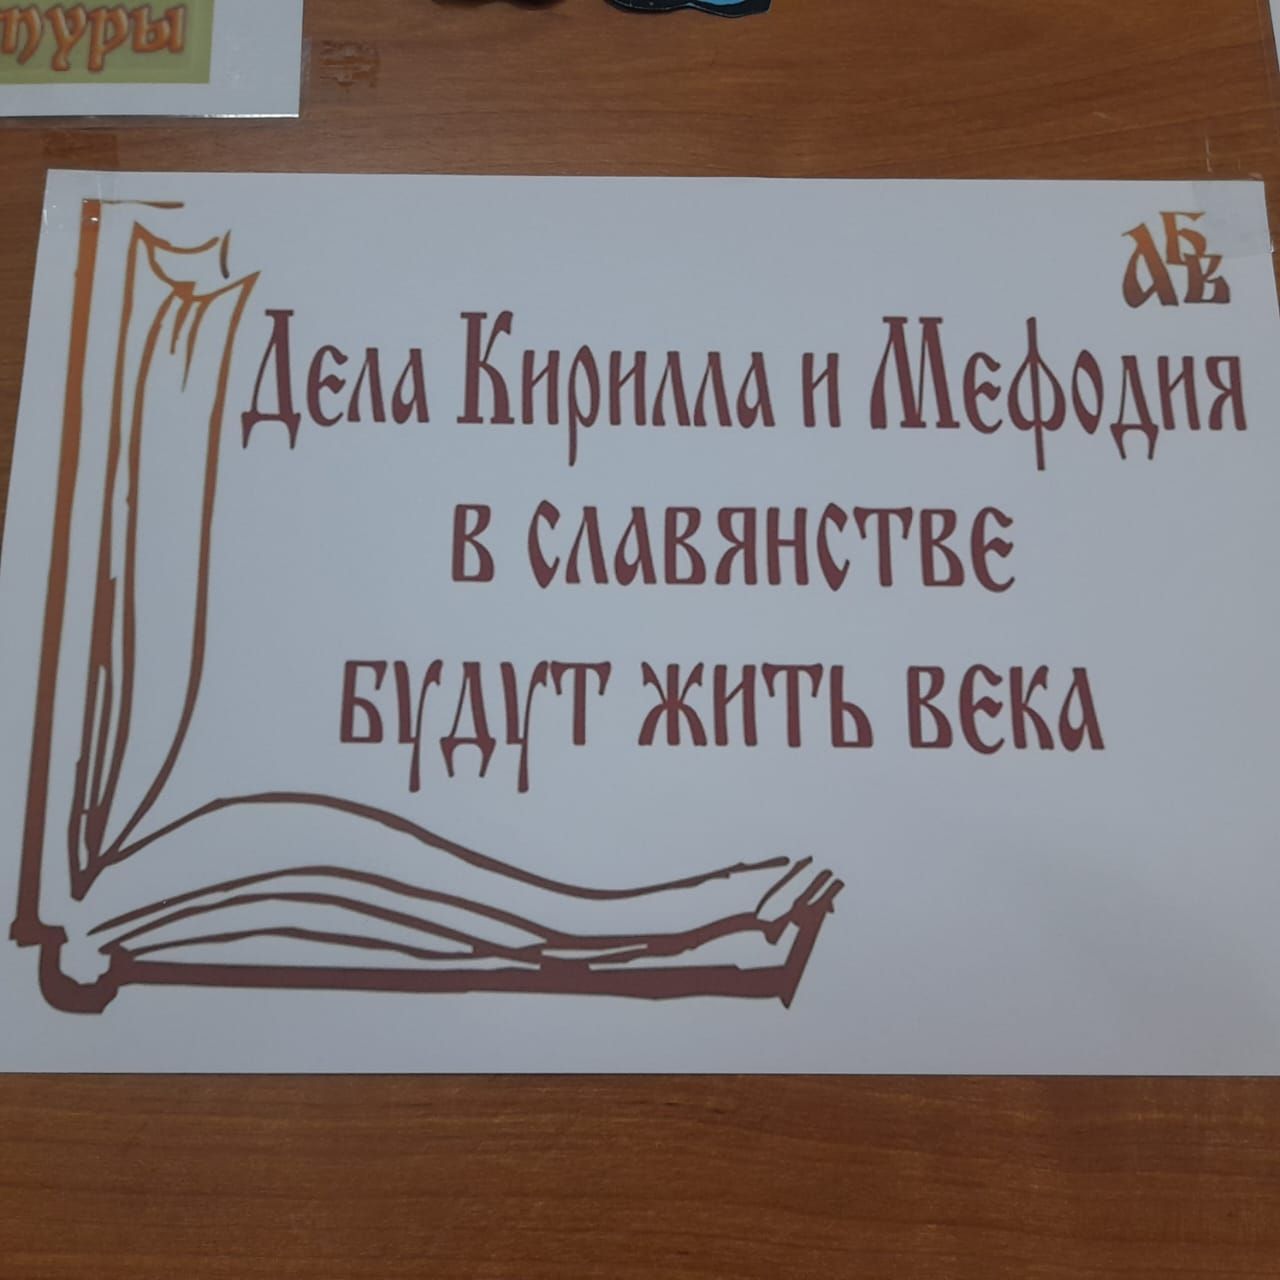 Сегодня отмечается День славянской письменности и культуры